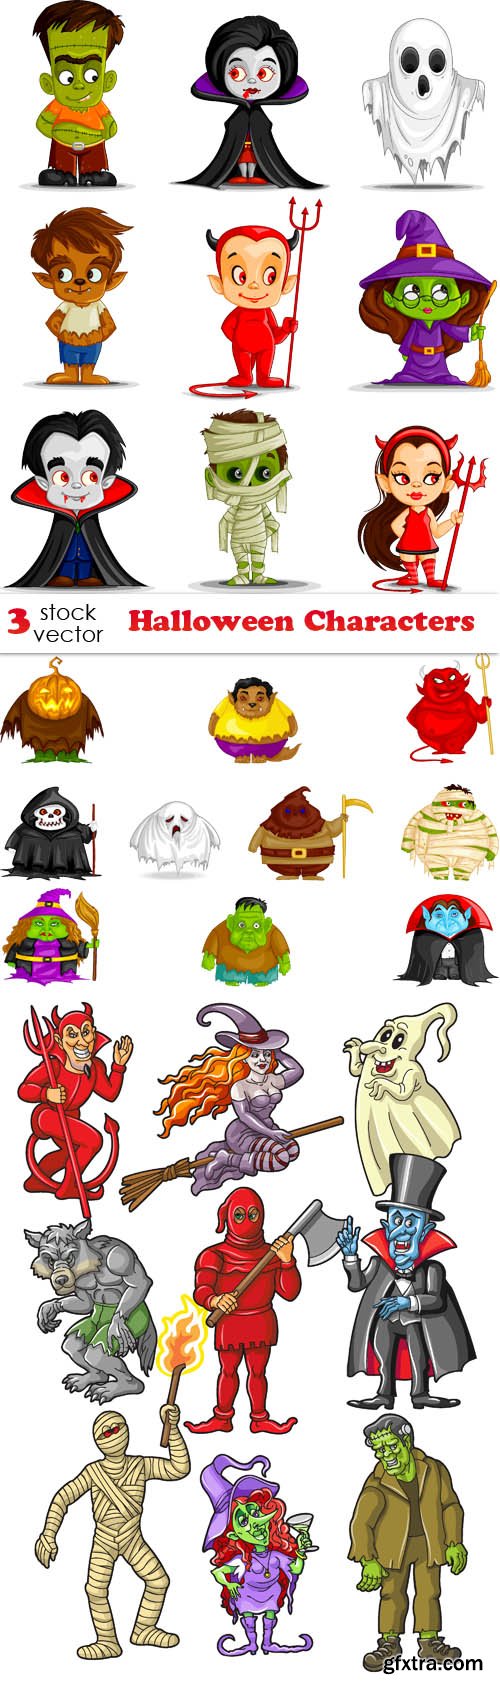 Vectors - Halloween Characters